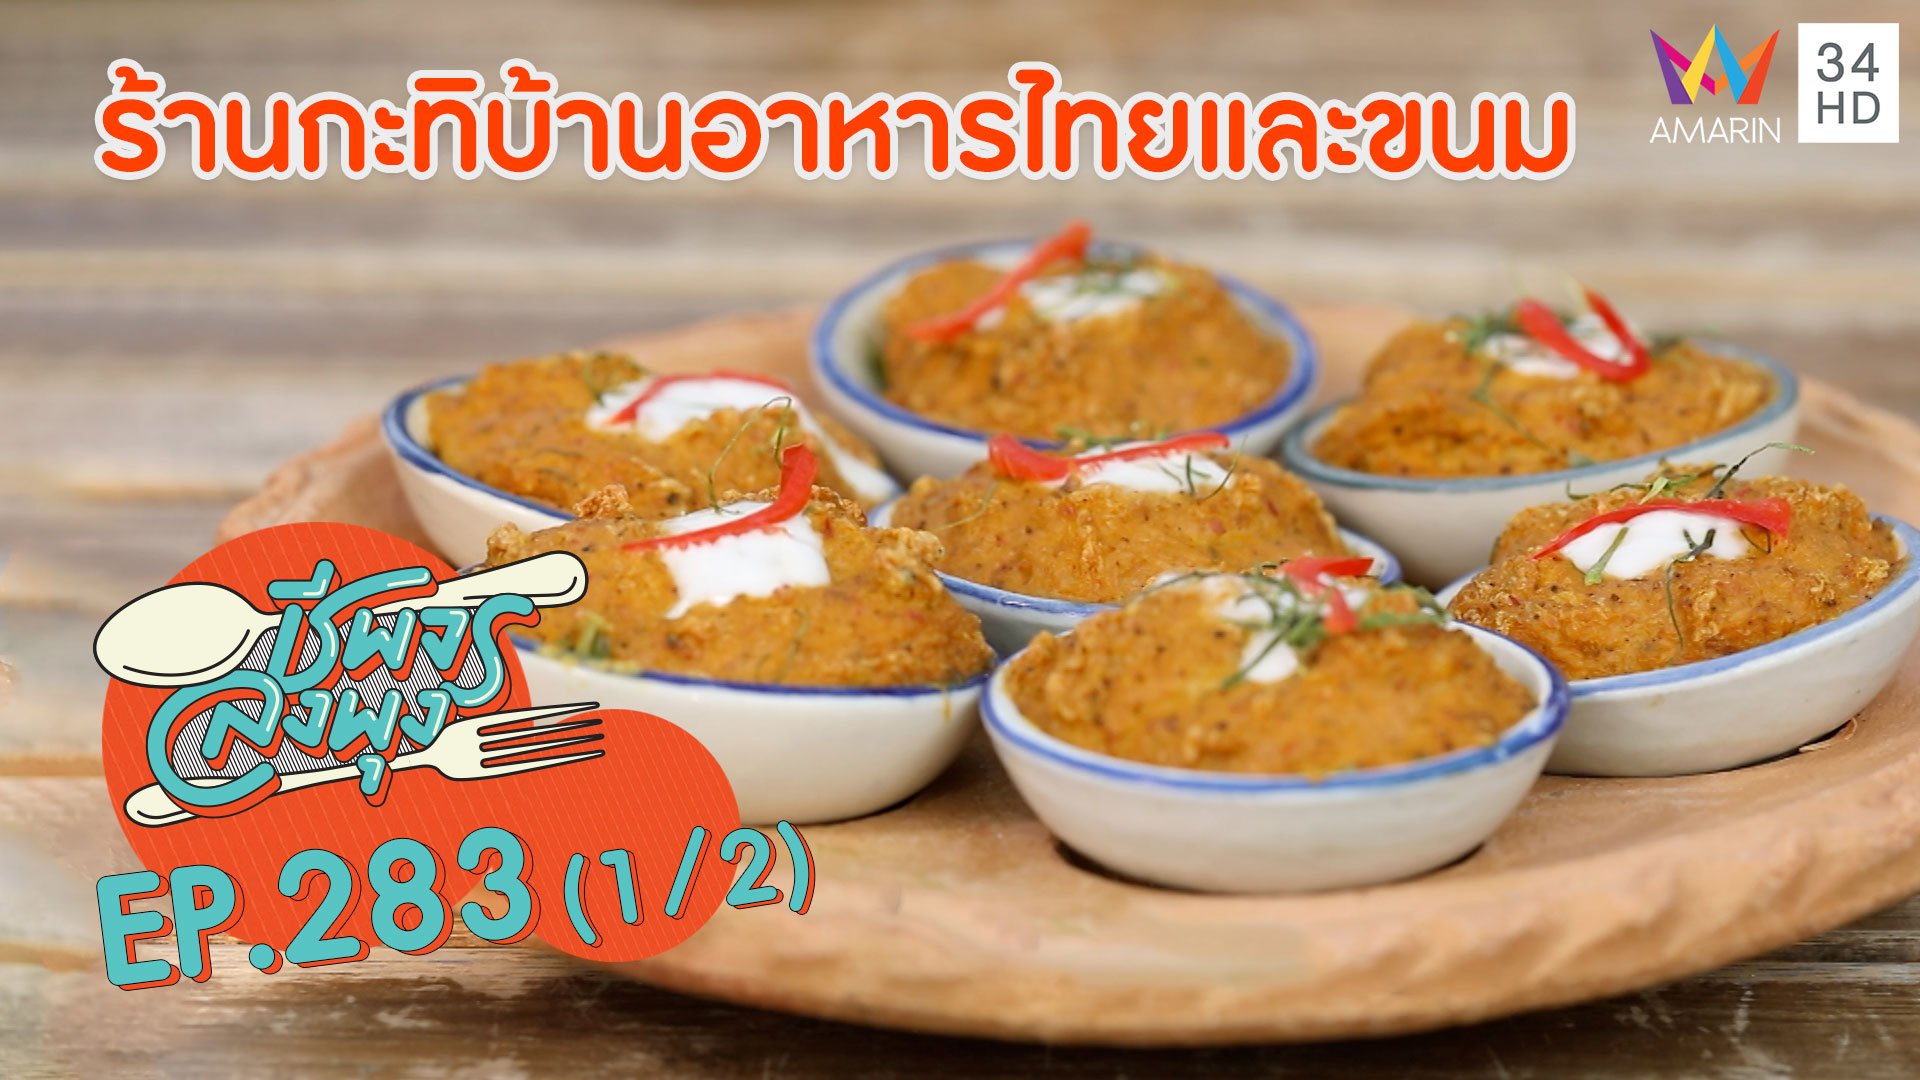 สุดยอดอาหารไทยรสเด็ด @ ร้านกะทิบ้านอาหารไทยและขนม | ชีพจรลงพุง | 7 มี.ค. 64 (1/2) | AMARIN TVHD34